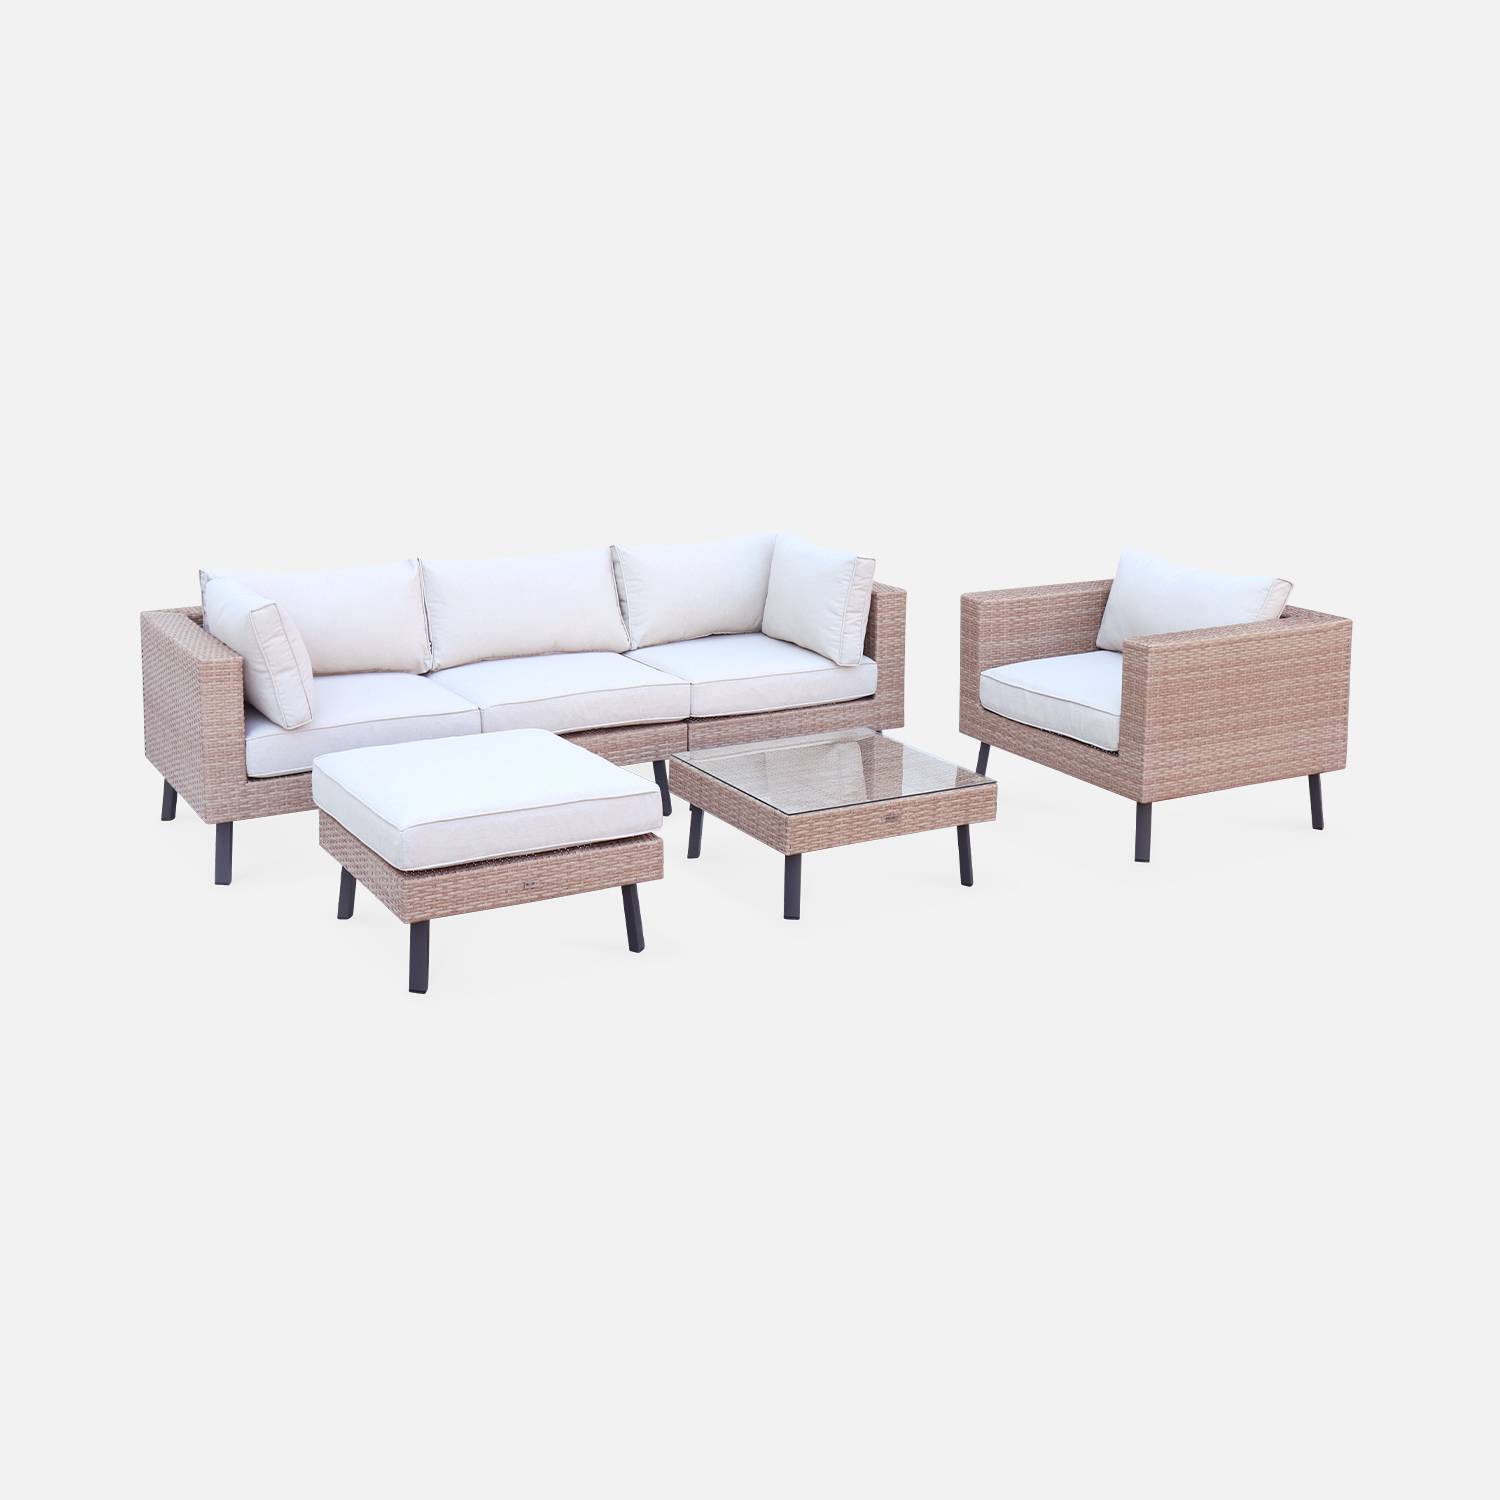 Conjunto de muebles de jardín para 5 personas en resina de tejido plano - Alba - resina y cojines beige | sweeek